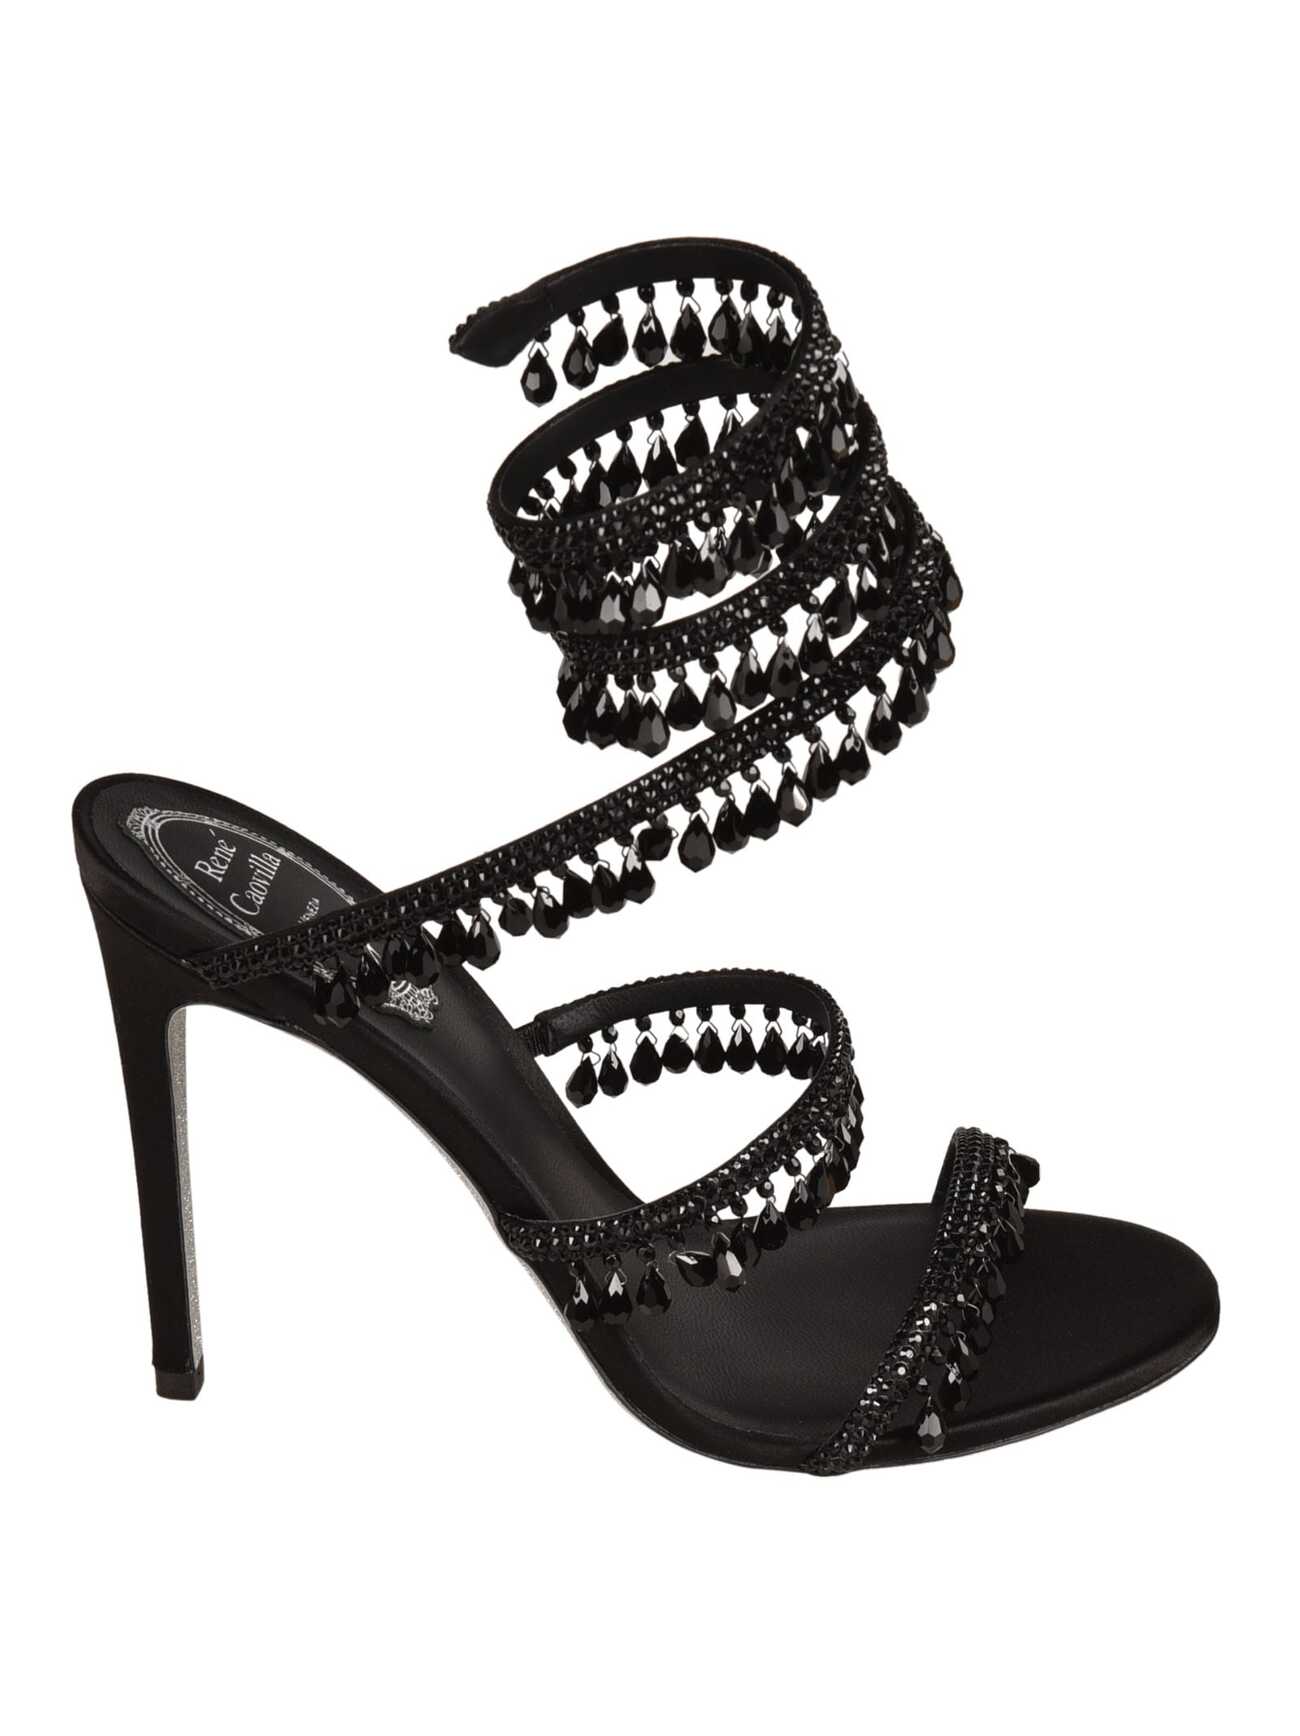 René Caovilla Crystal Embellished Ankle Strap Sandals in black